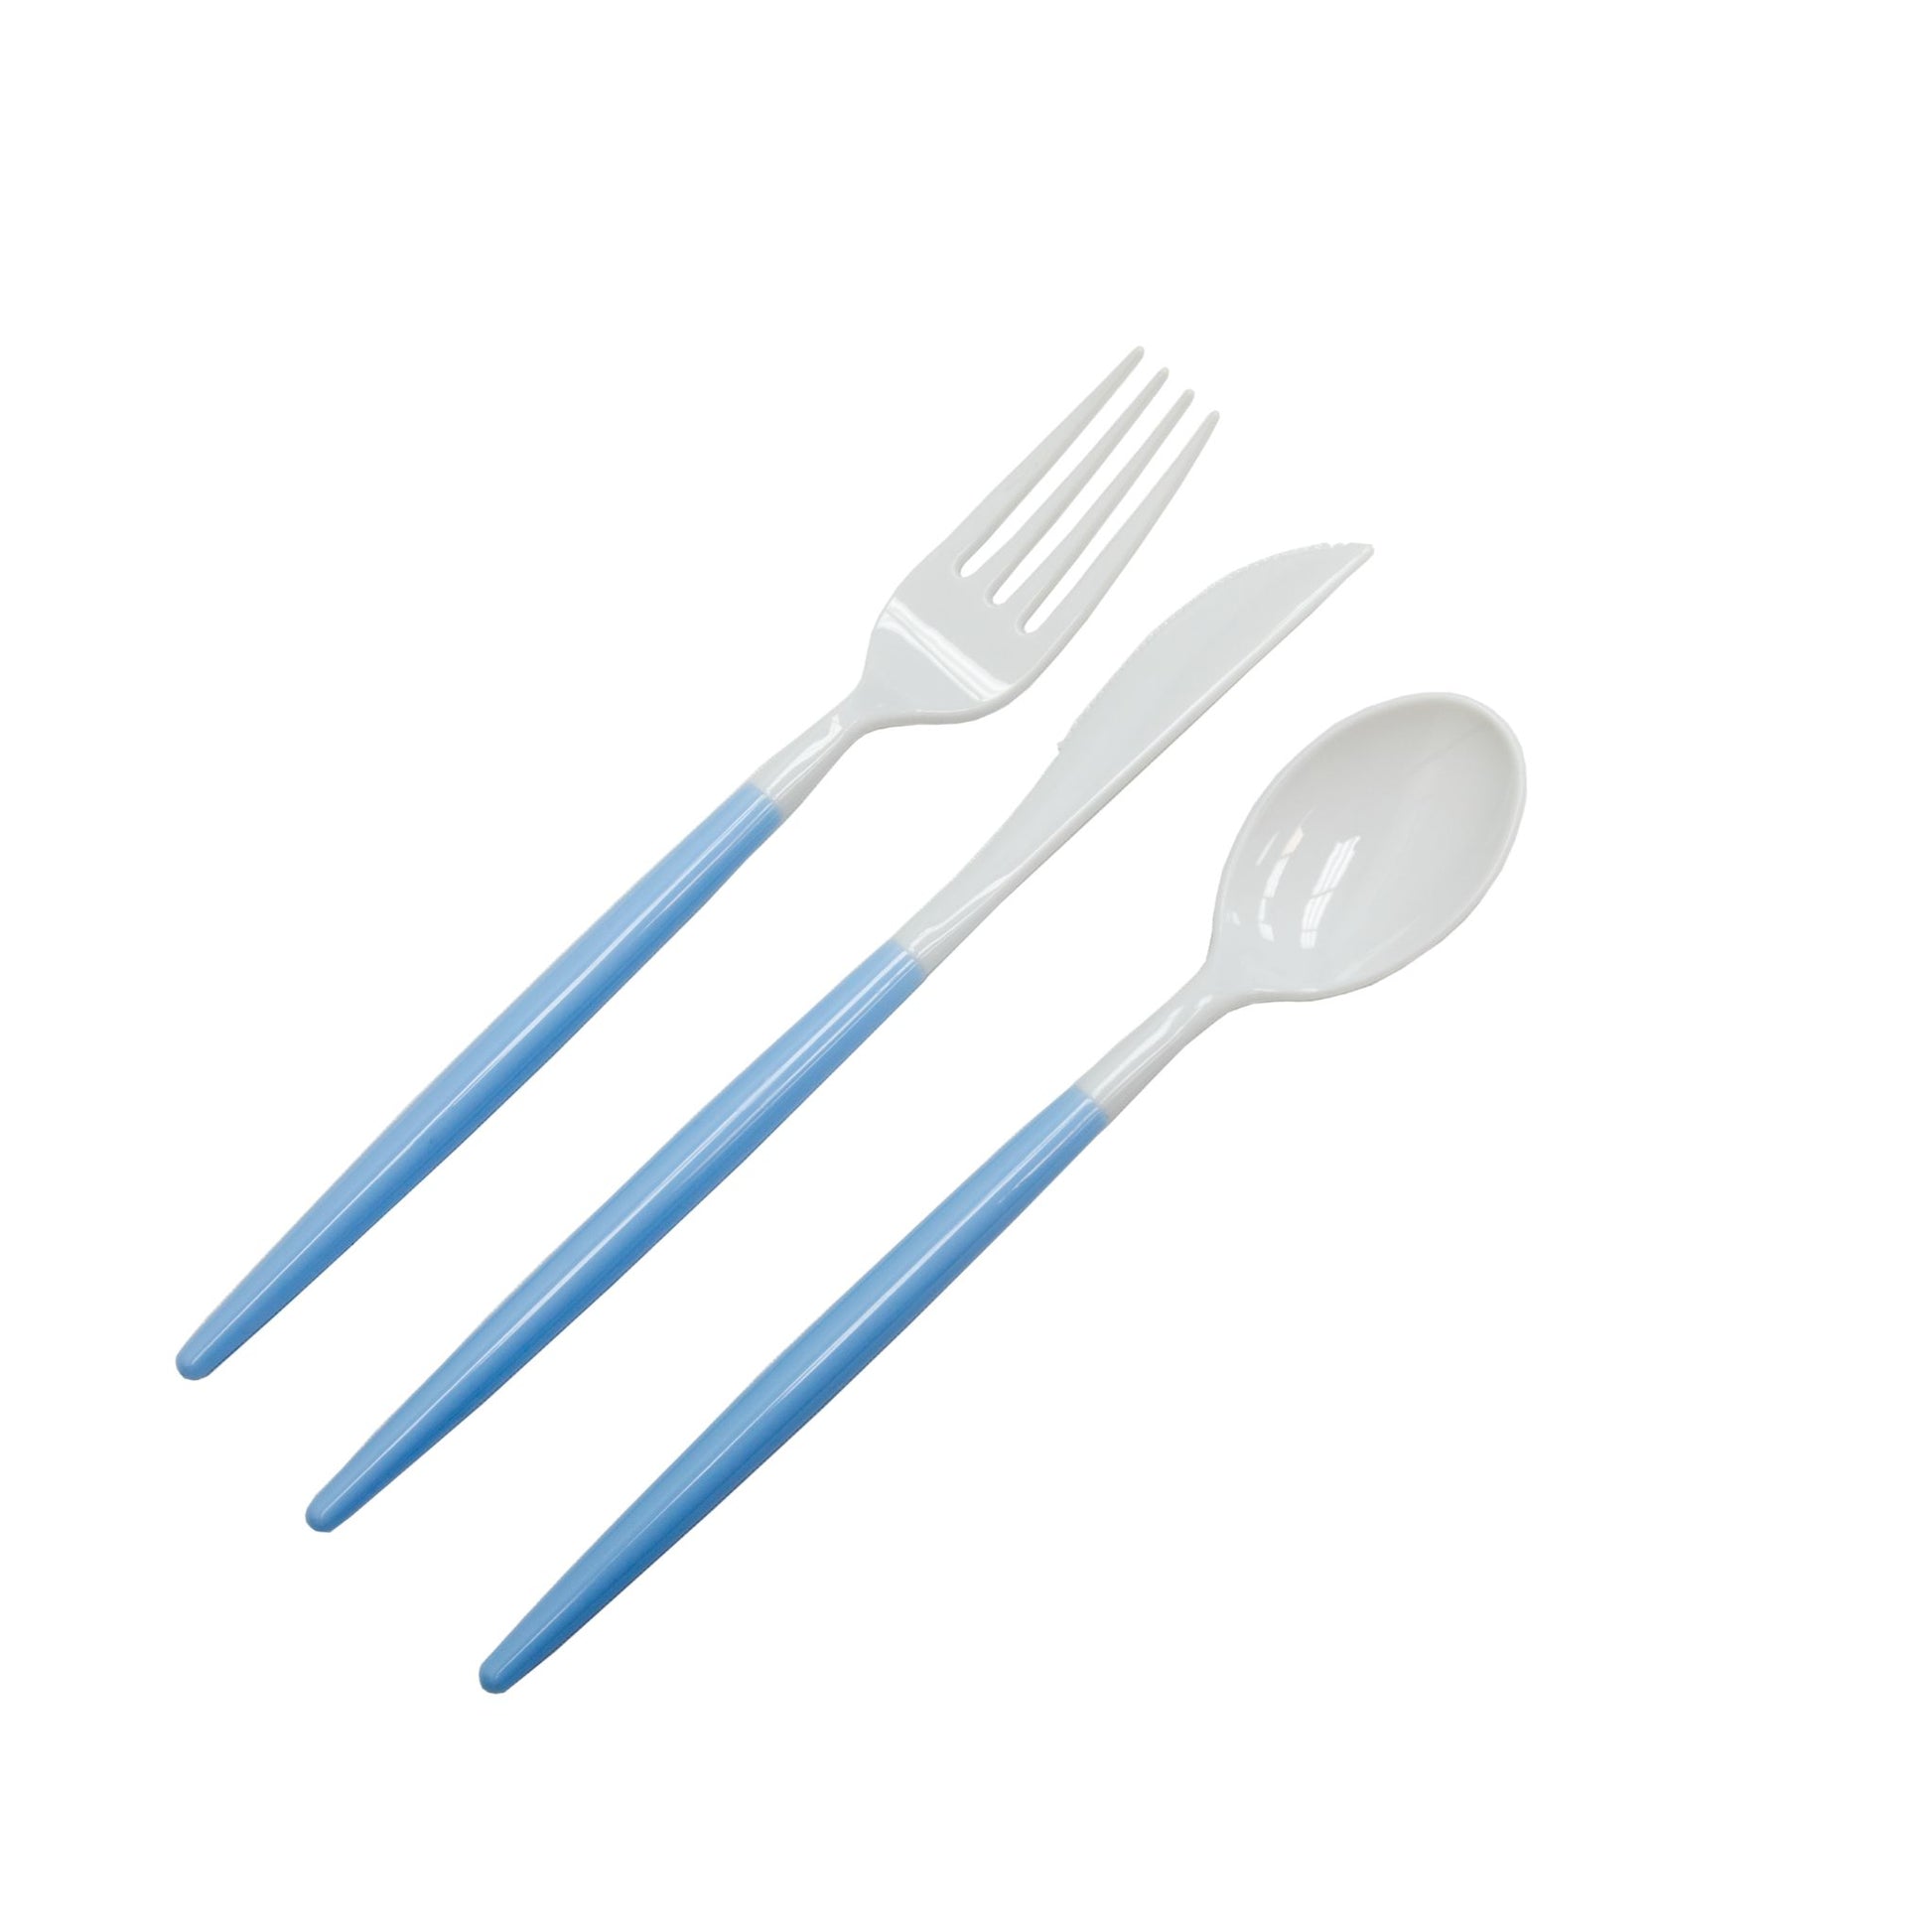 Blue Plastic Cutlery Set 60pcs/pk - White Mod Collection